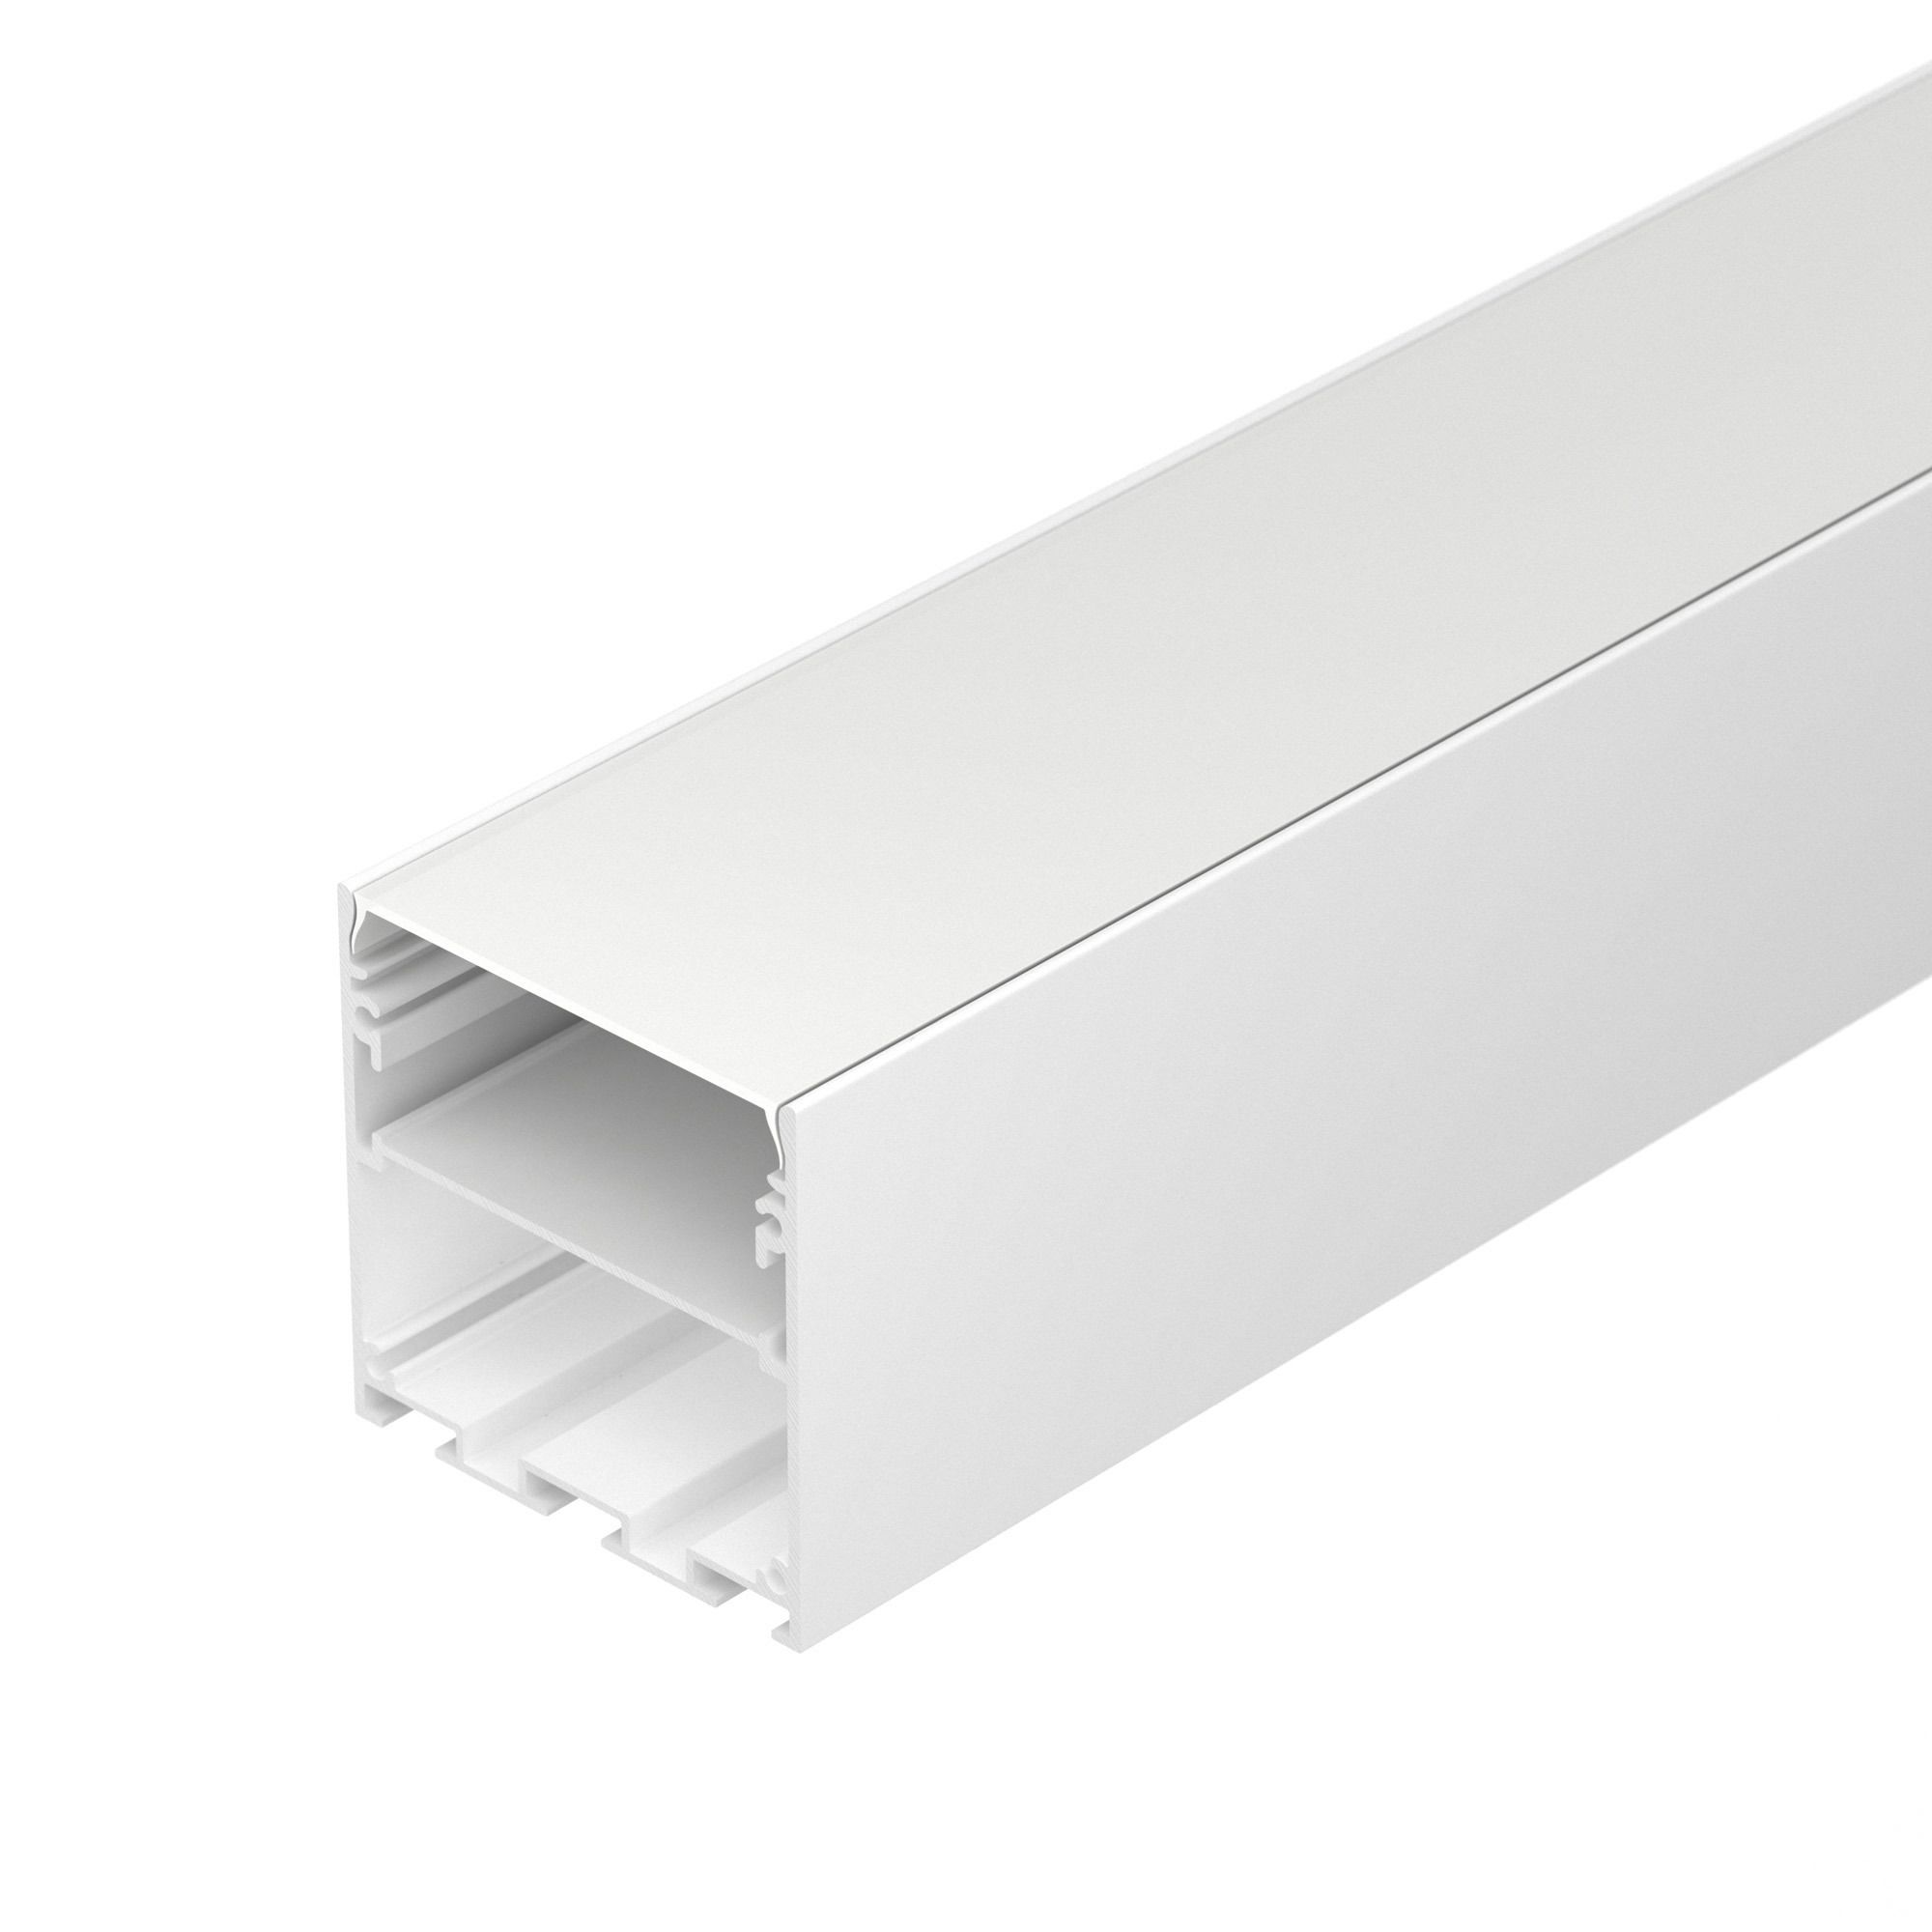 Профиль LINE-S-5050-2500 WHITE (Arlight, Алюминий) профиль line s 5050 2500 white arlight алюминий